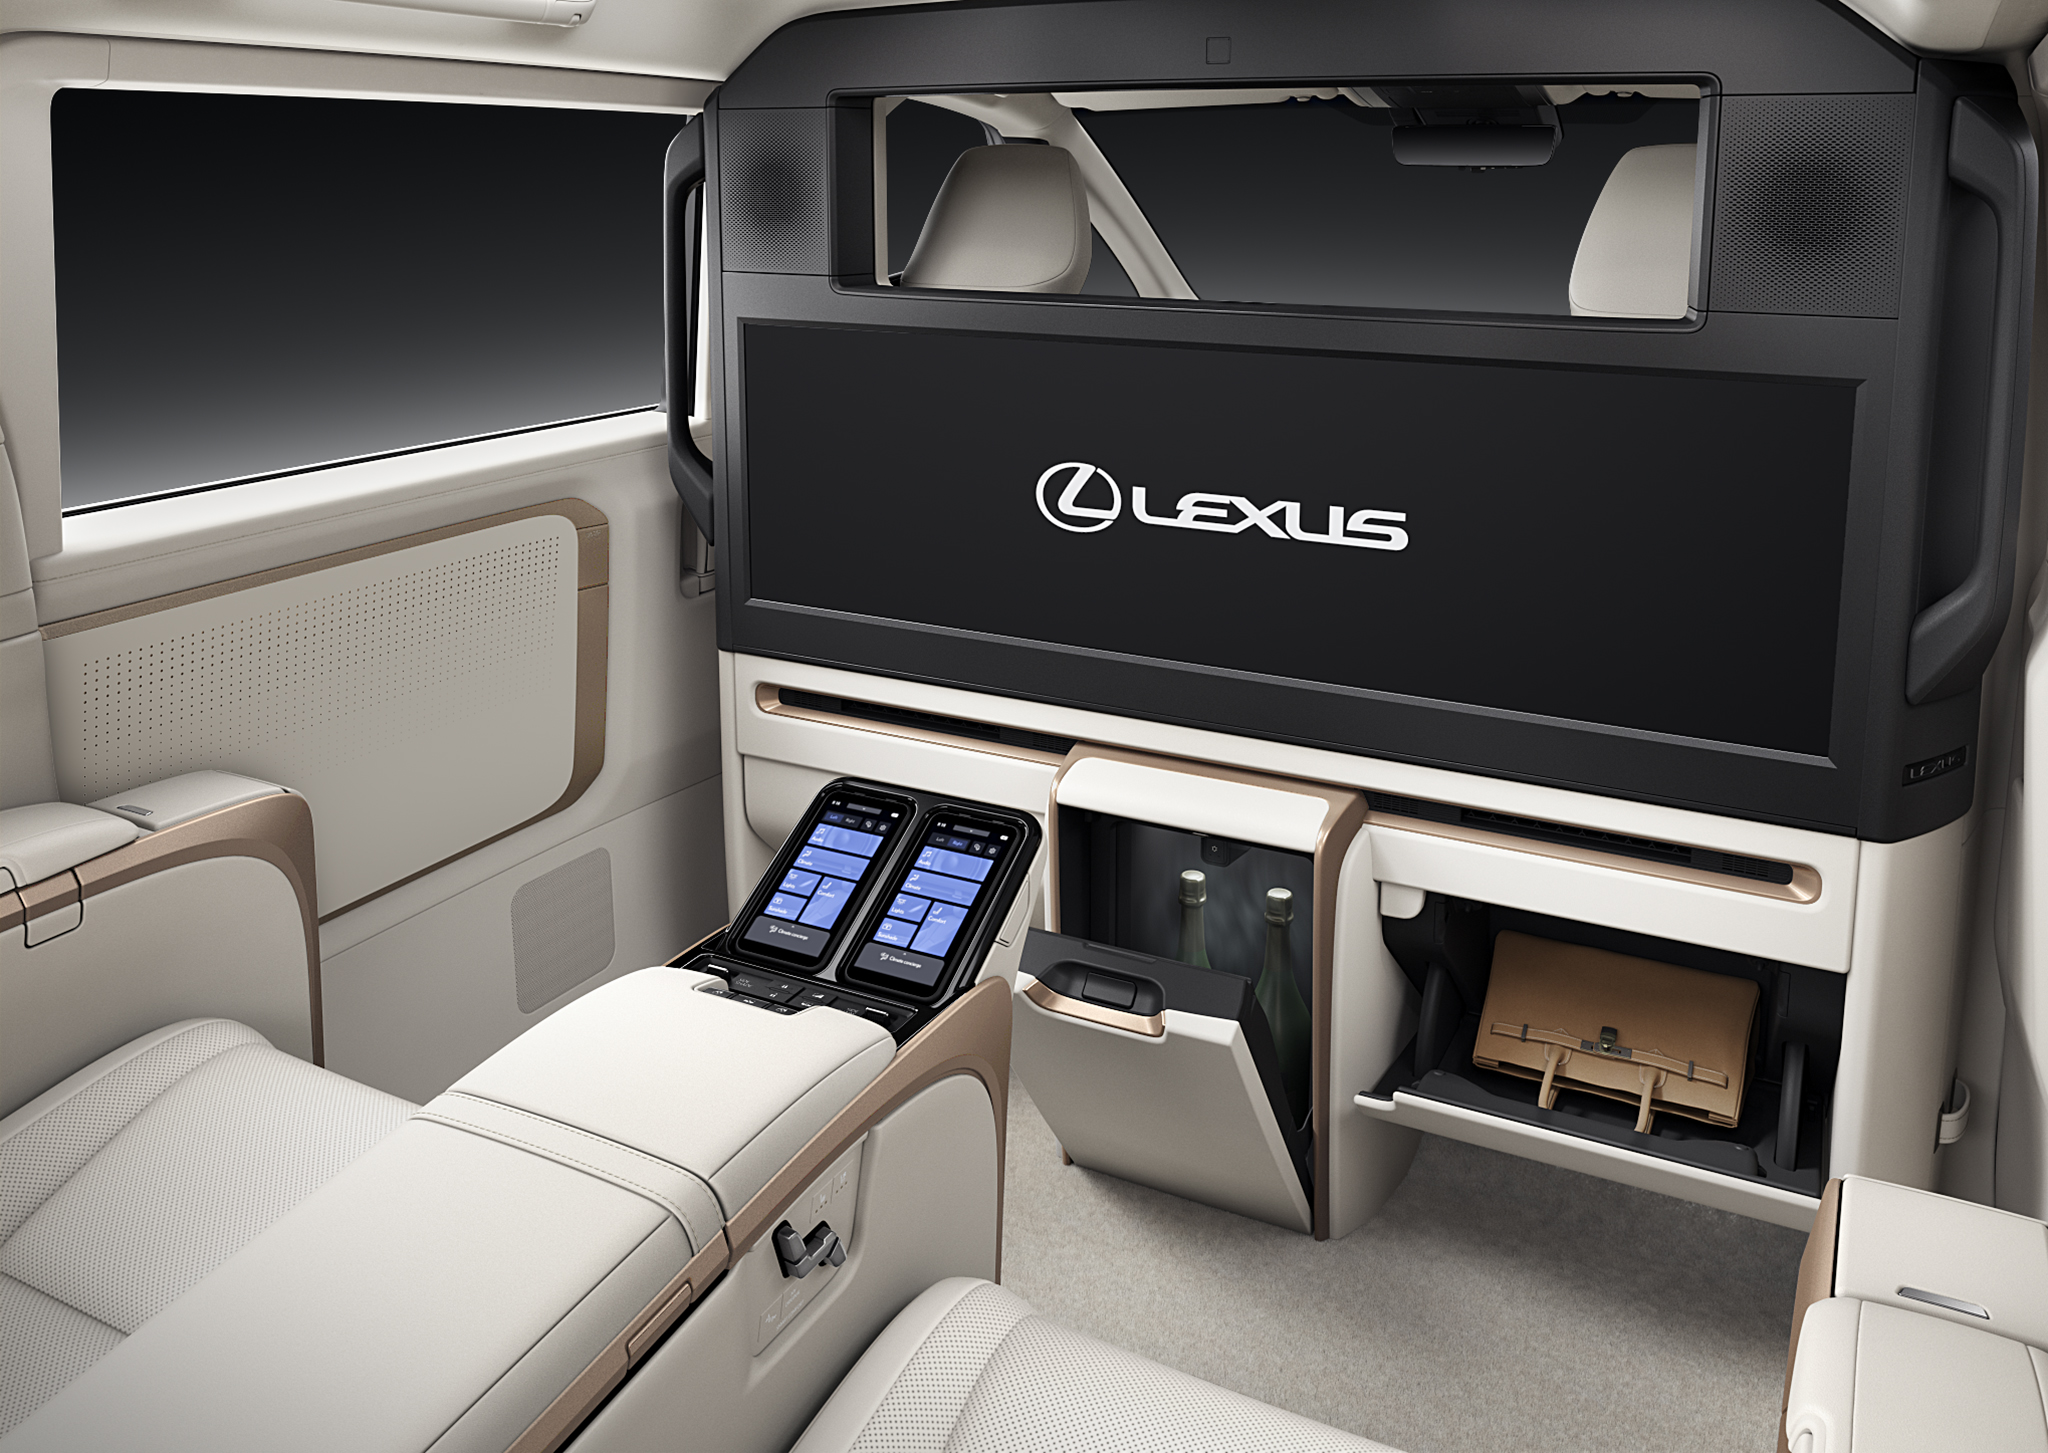 Lexus LM limousine seats